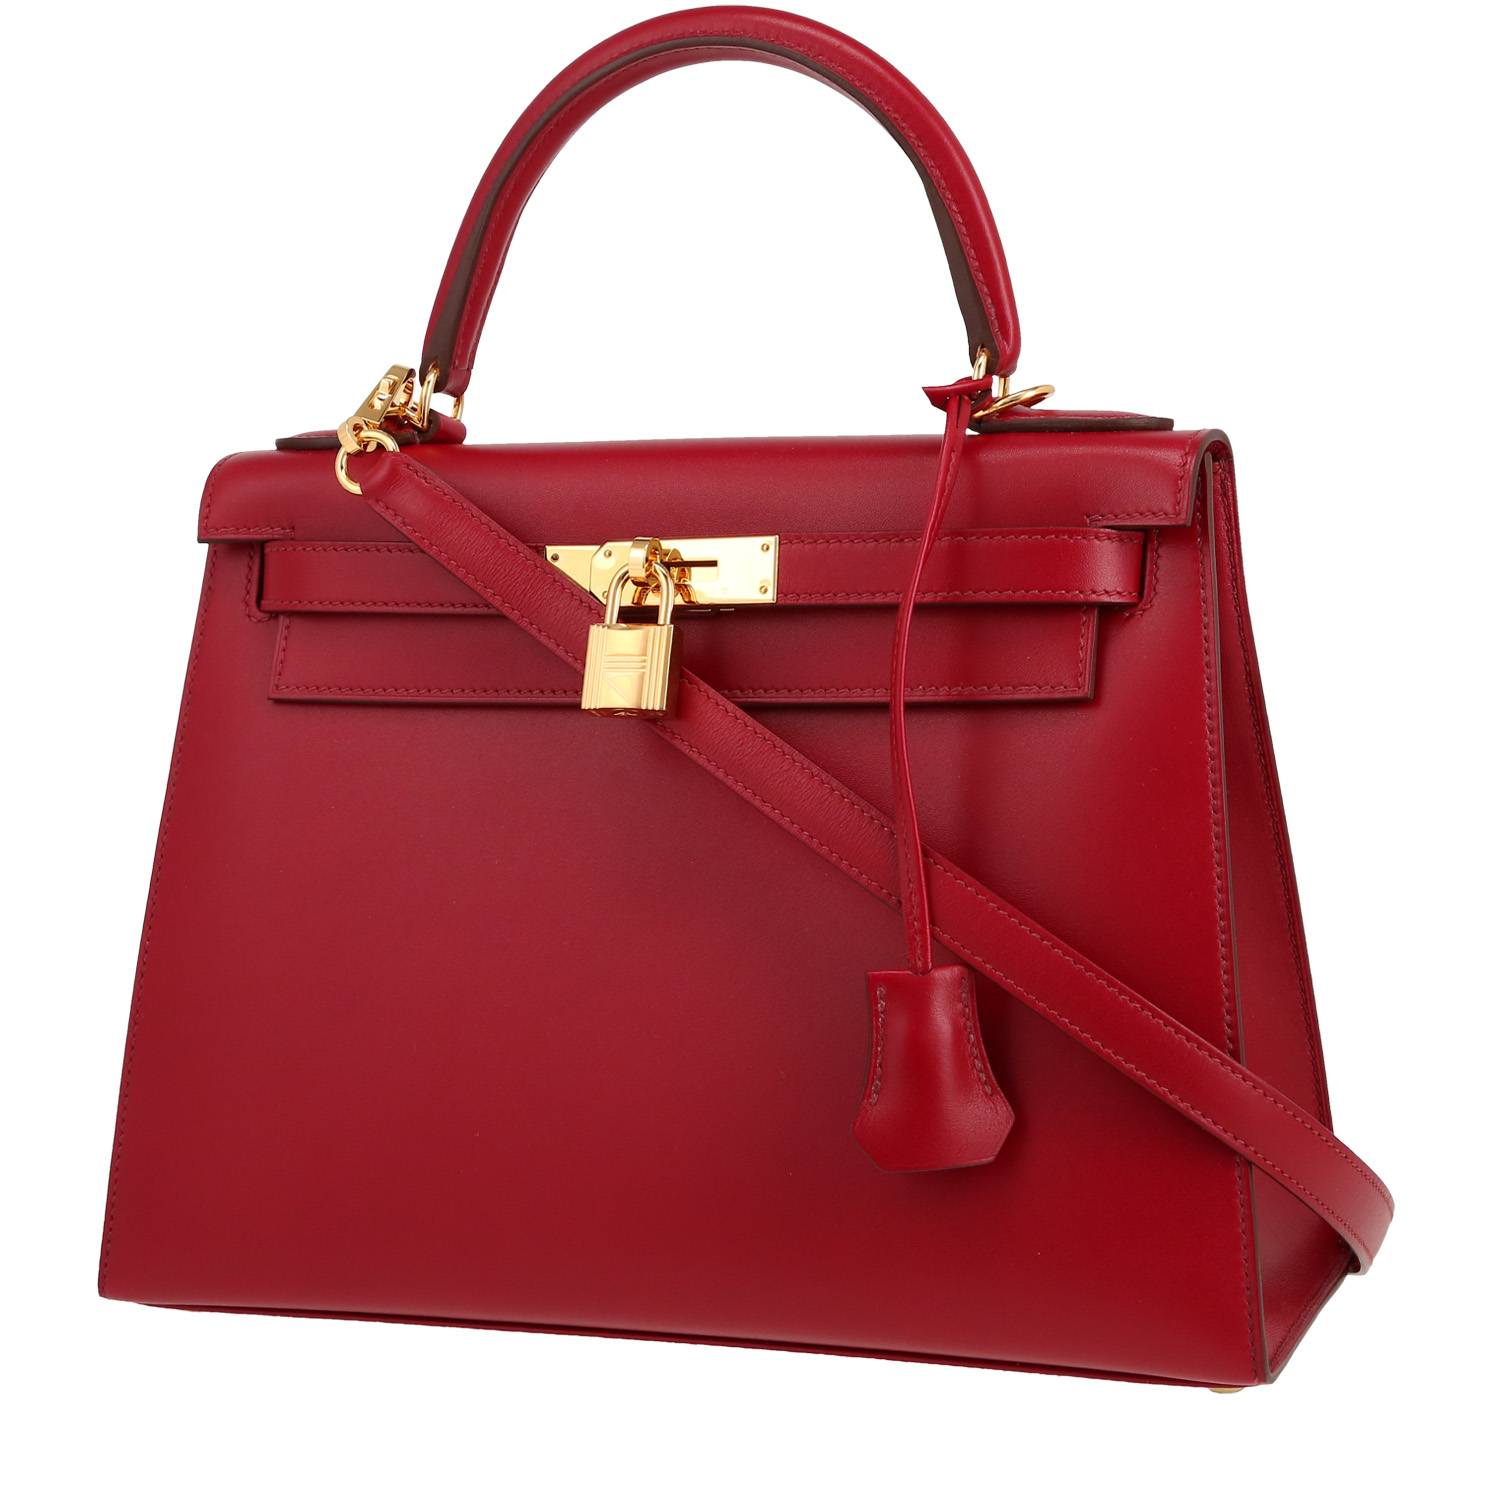 Kelly 28 cm Handbag In Rubis Tadelakt Leather